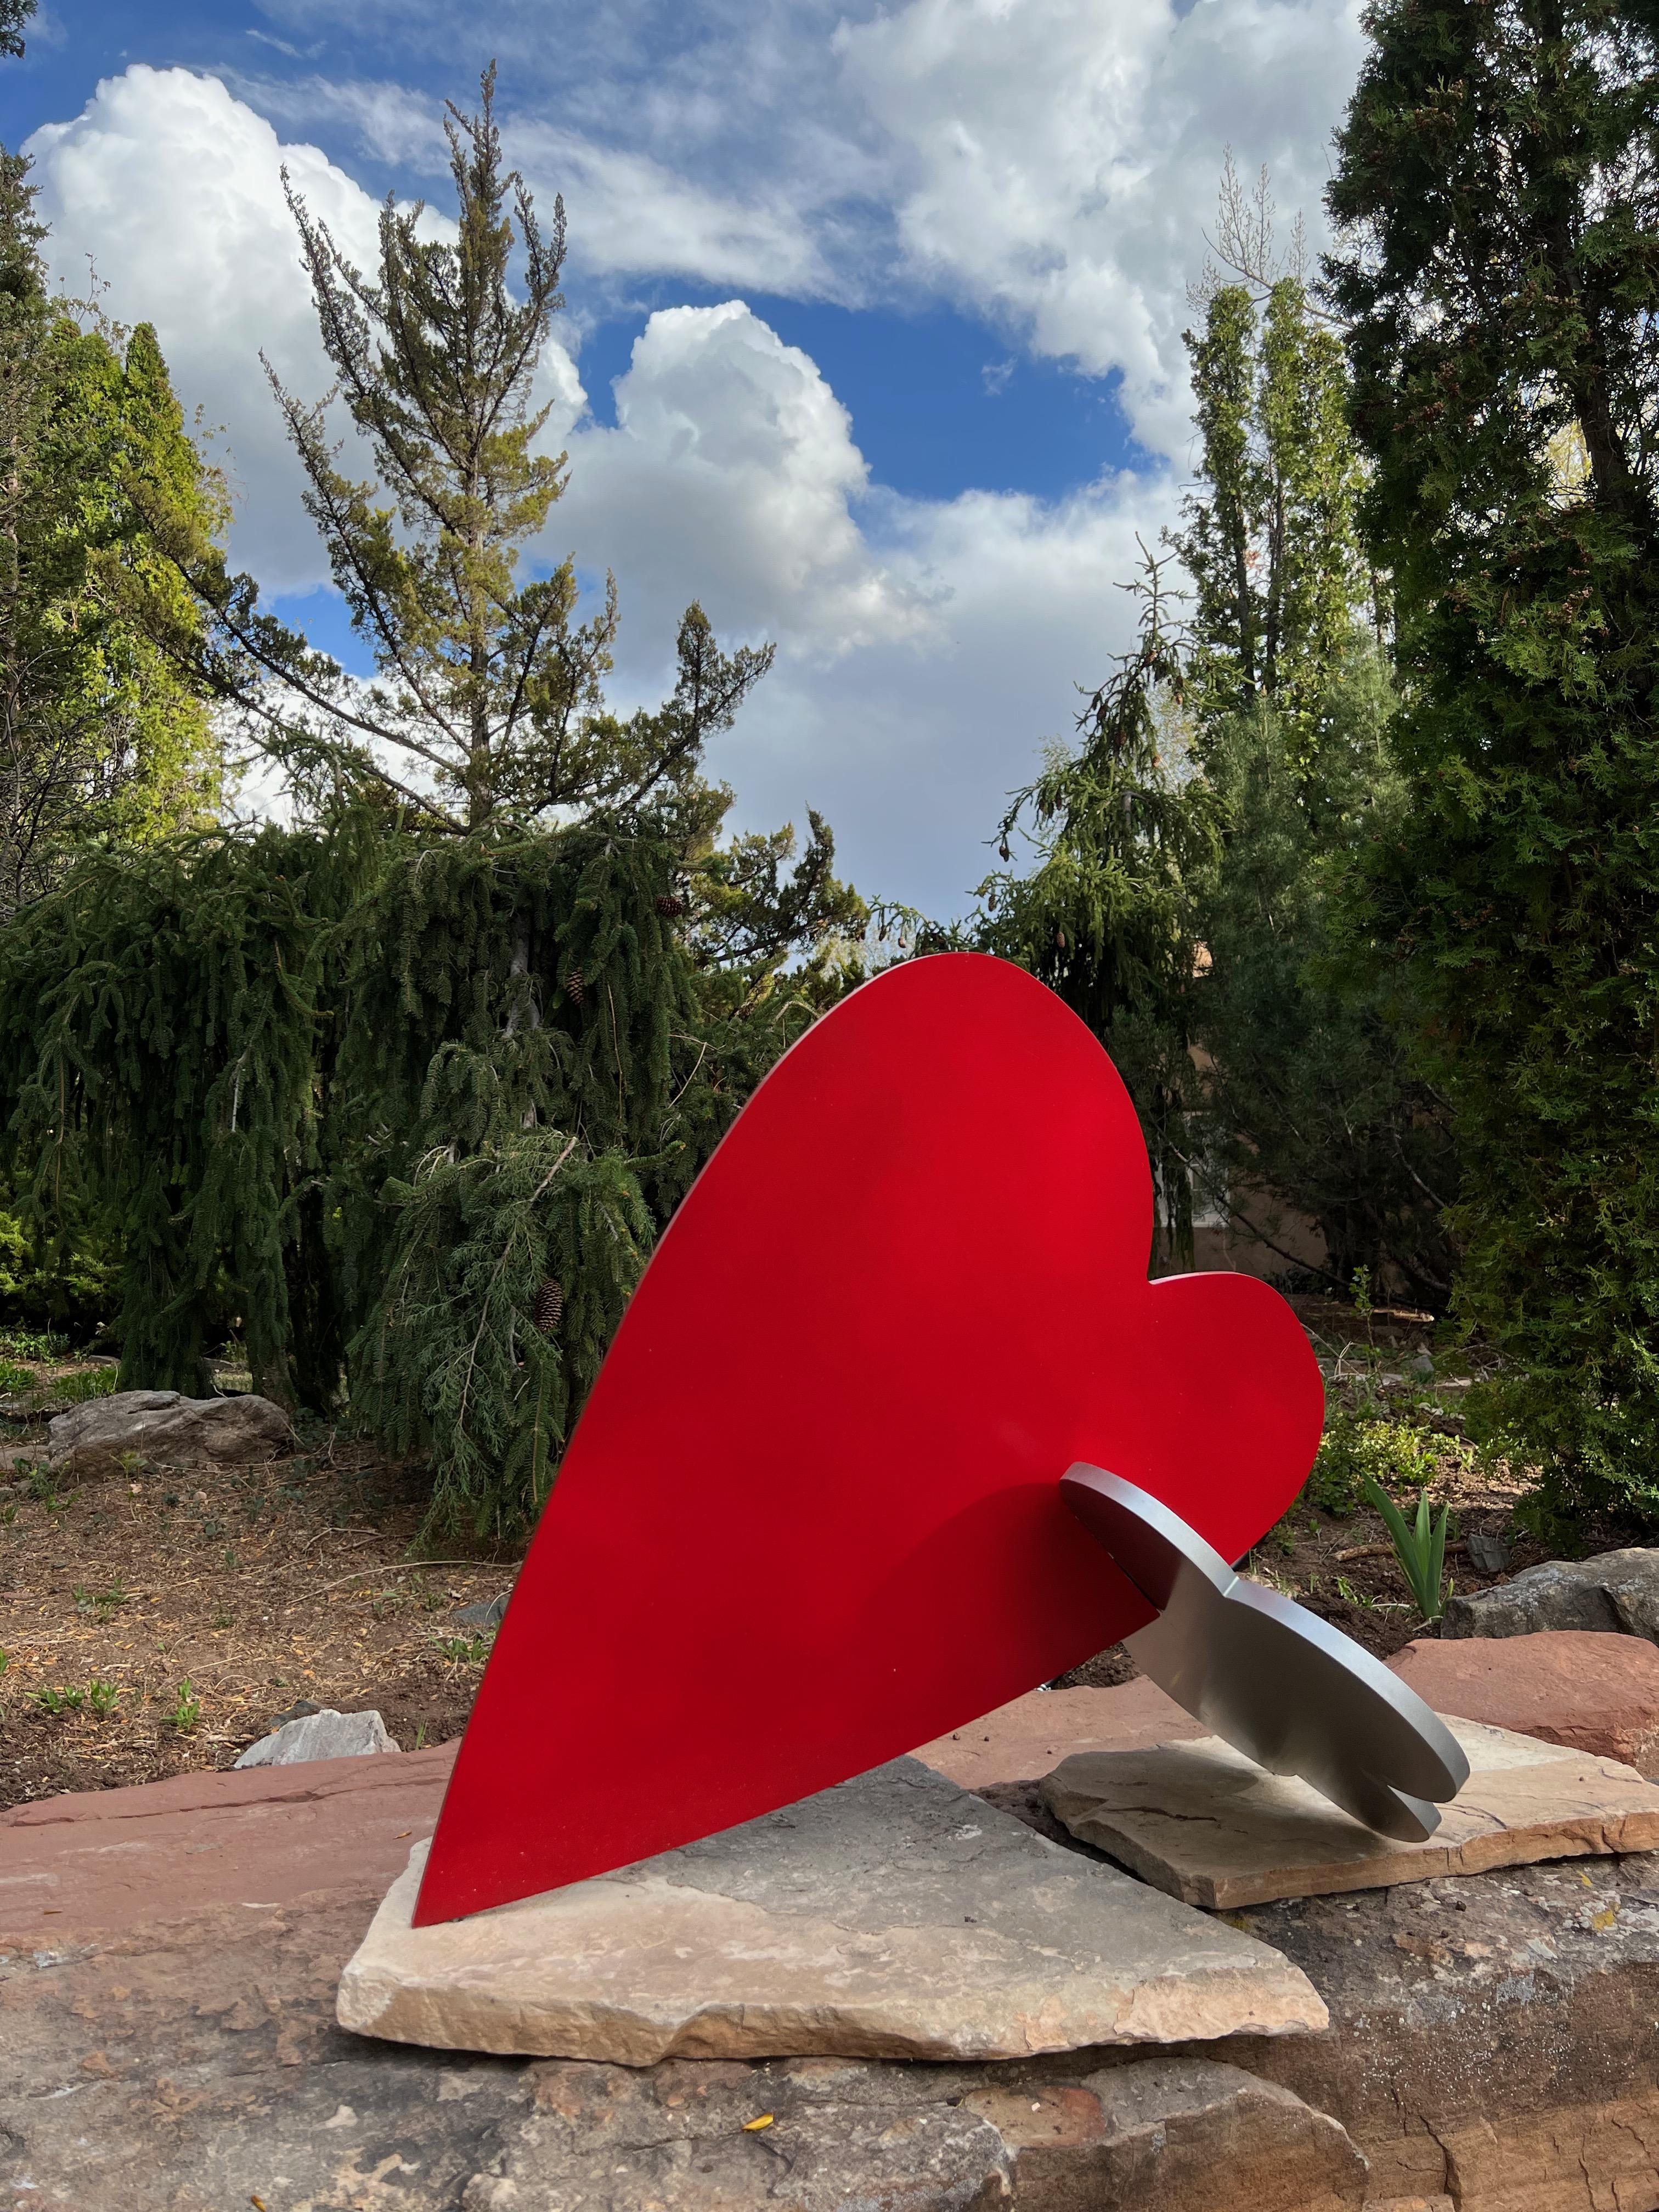 Heart + Cloud, Skulptur von Kerry Green, zeitgenössisch, innen, außen, rot, silber
limitierte Auflage 18, aus Aluminium gefertigt
Ineinander greifende Skulptur für die Ausstellung in Innenräumen.

Kontaktieren Sie uns für Informationen über aktuelle